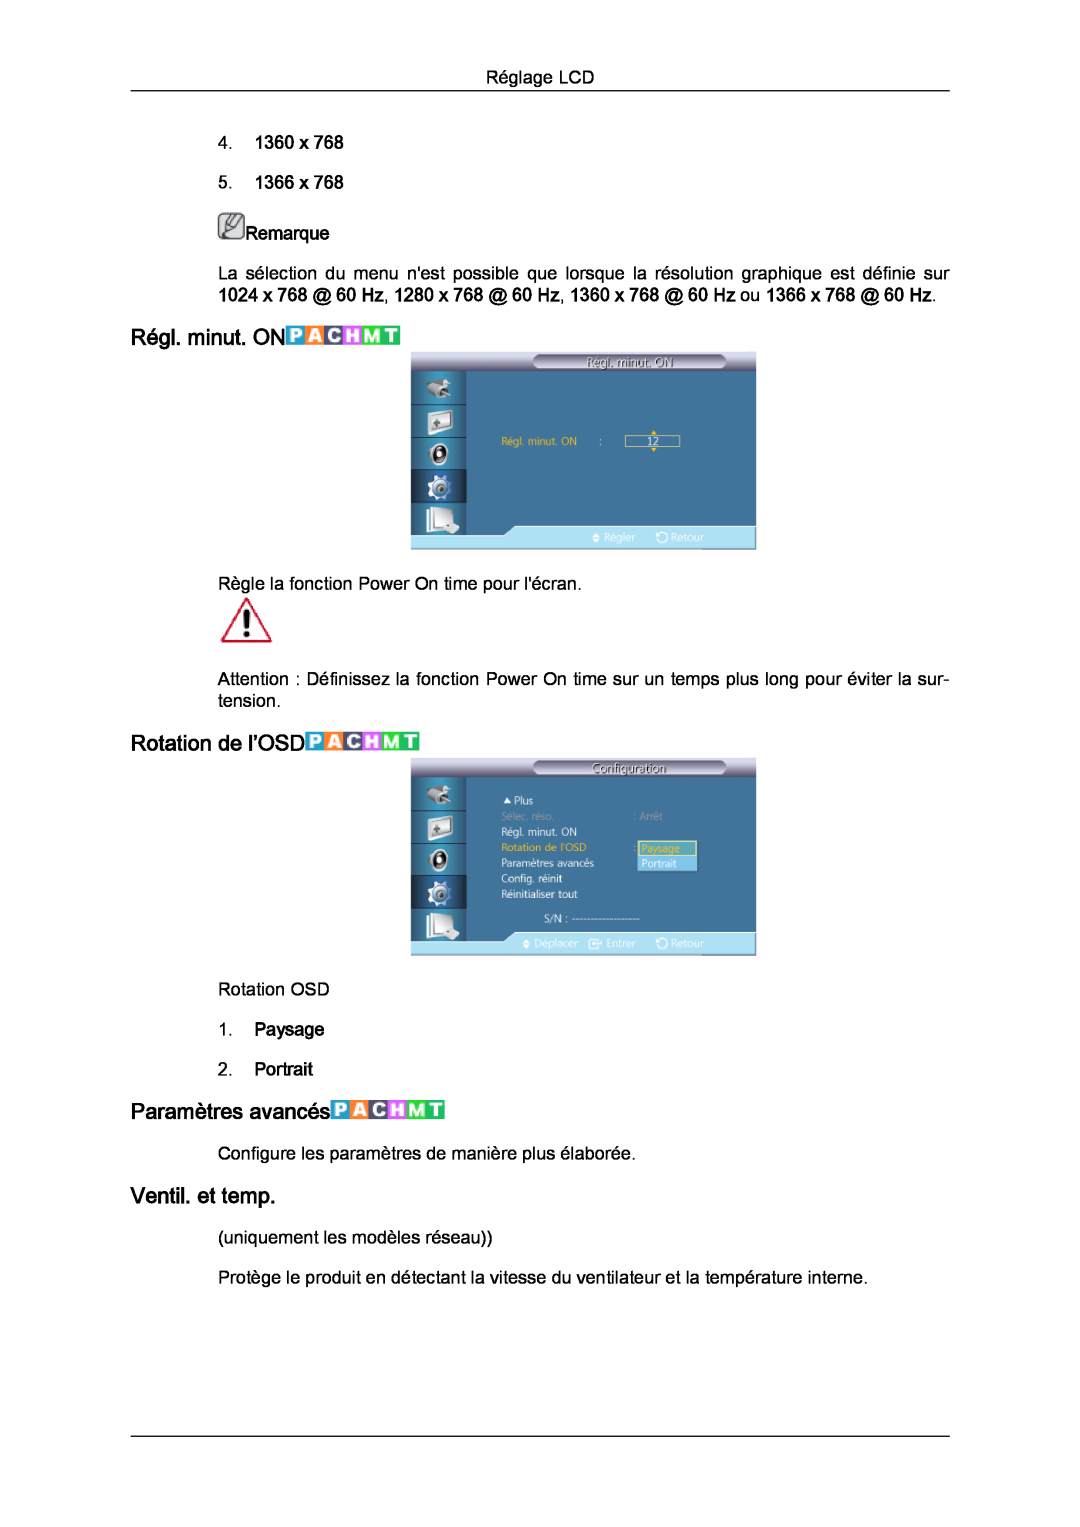 Samsung LH46CRPMBD/EN manual Régl. minut. ON, Rotation de l’OSD, Paramètres avancés, Ventil. et temp, Paysage 2. Portrait 